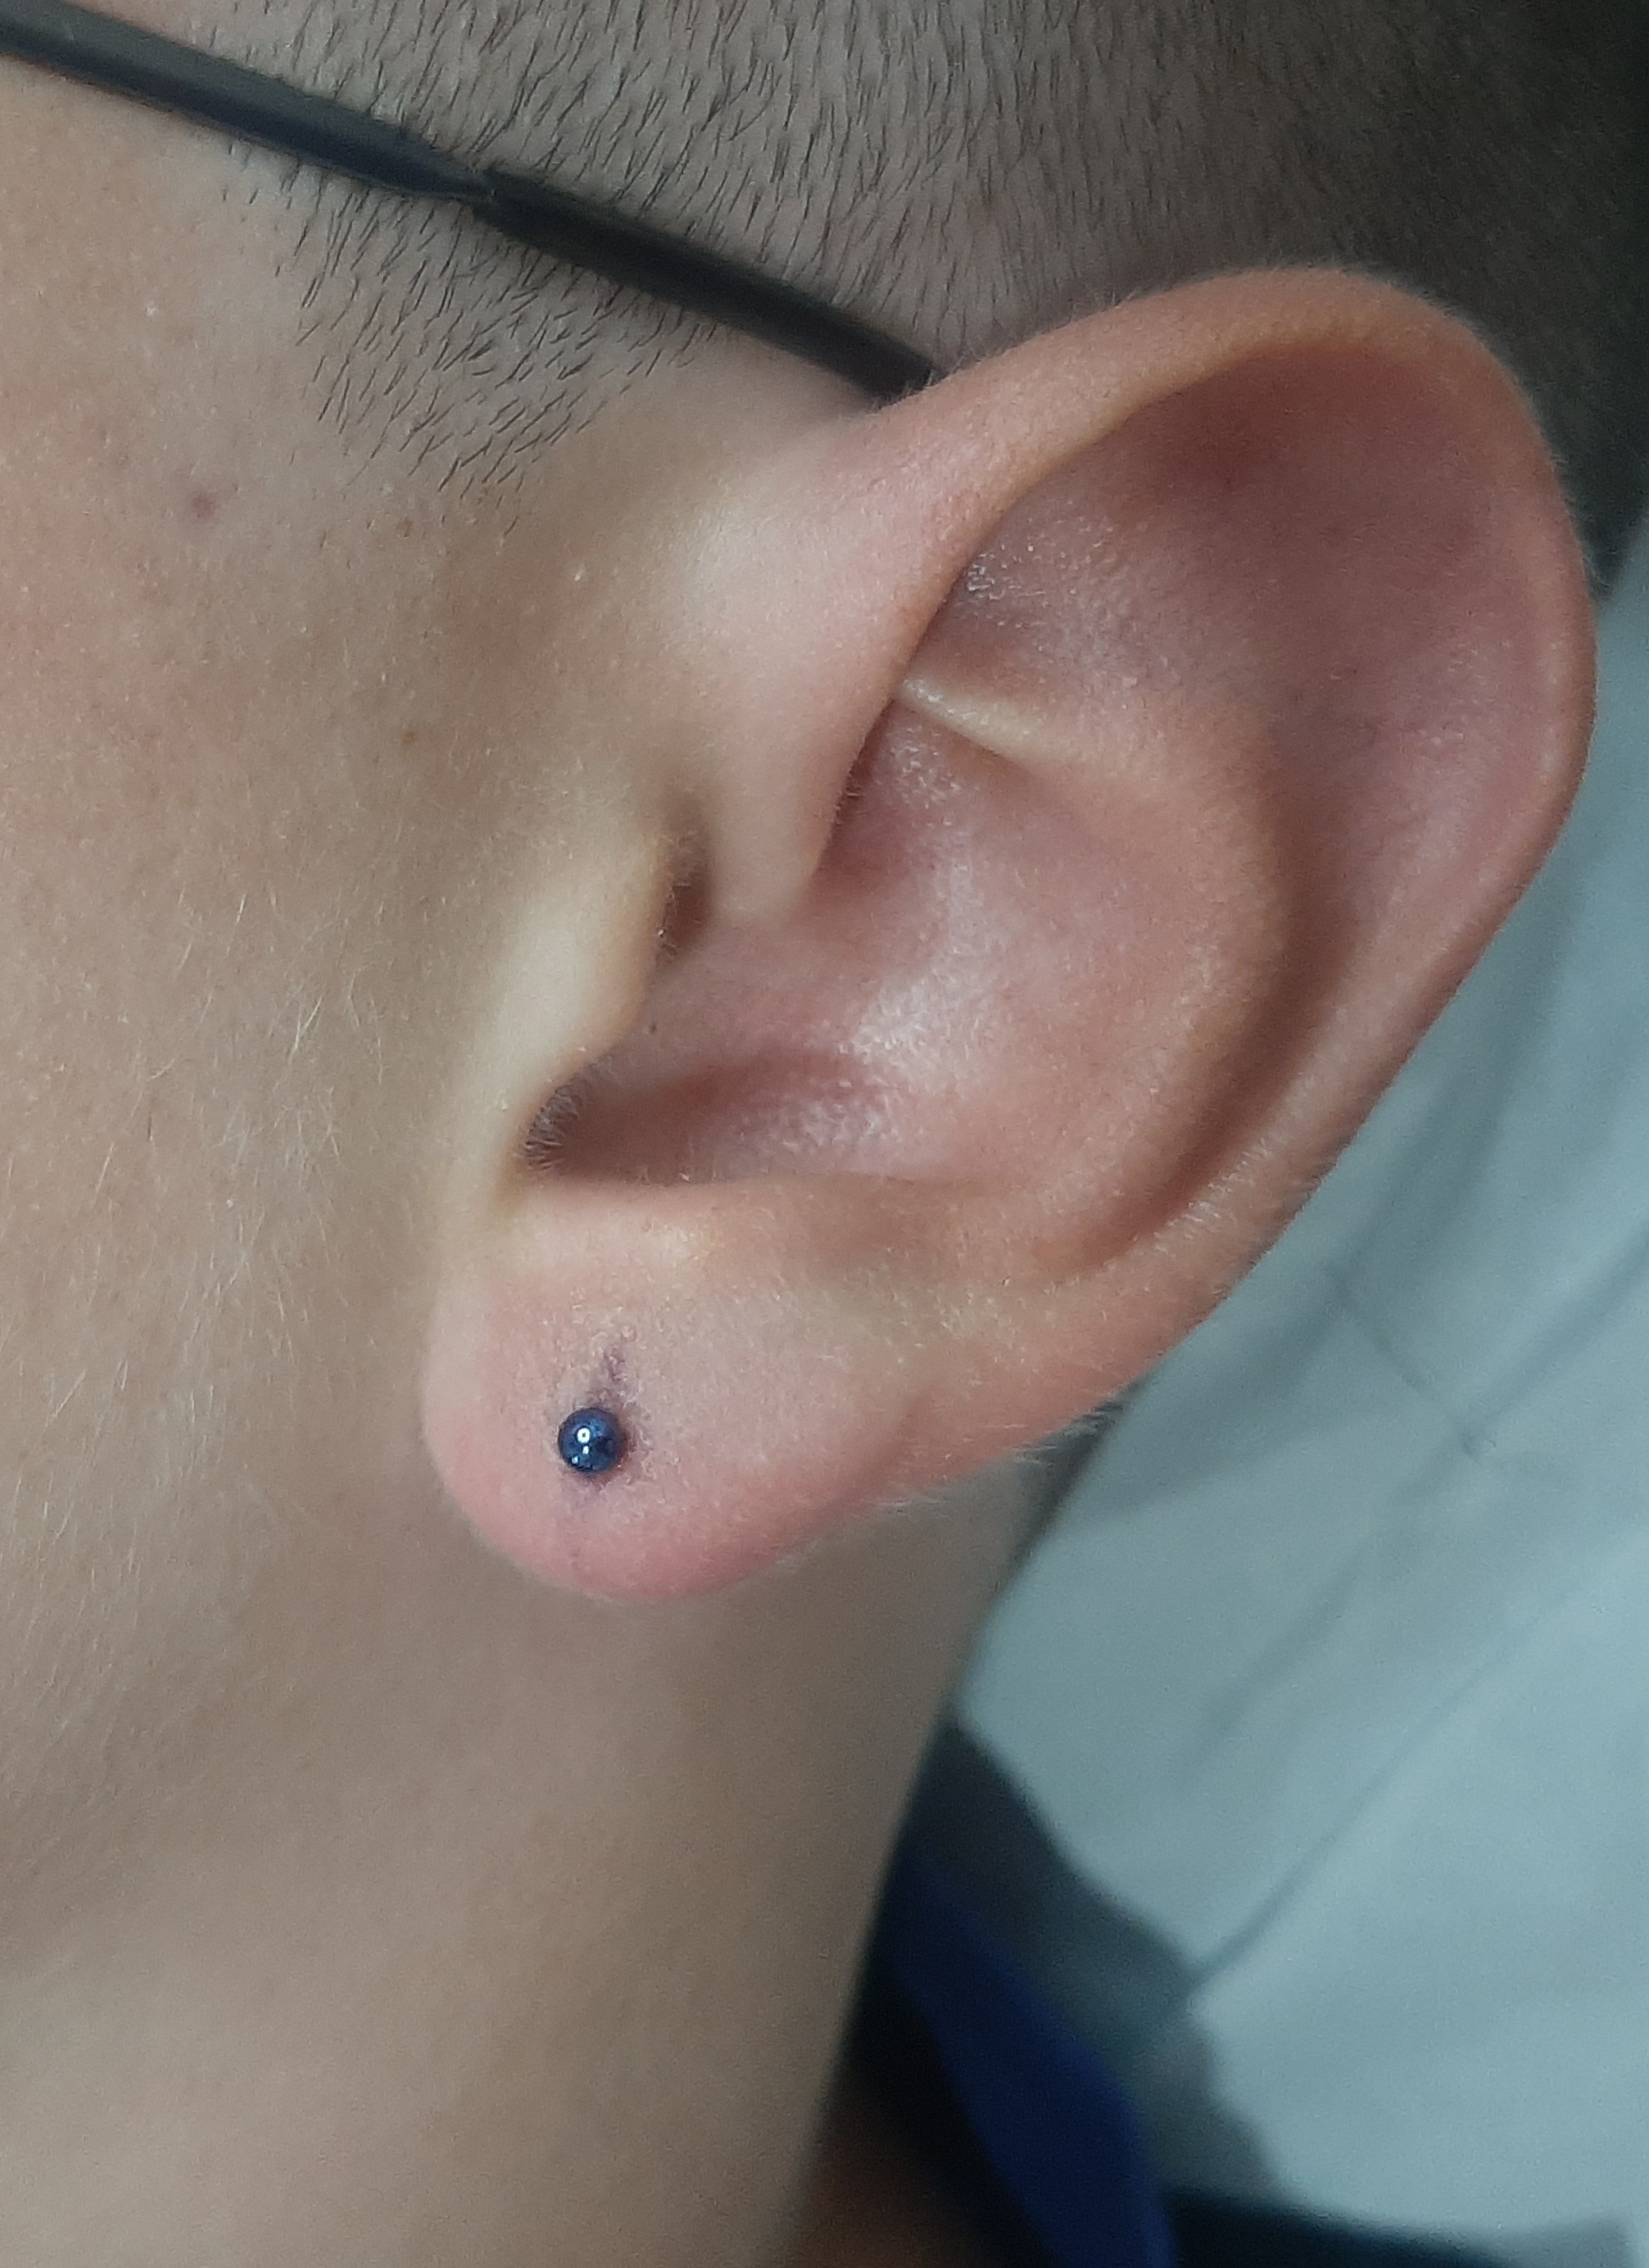 Ear lobe piercing 👂